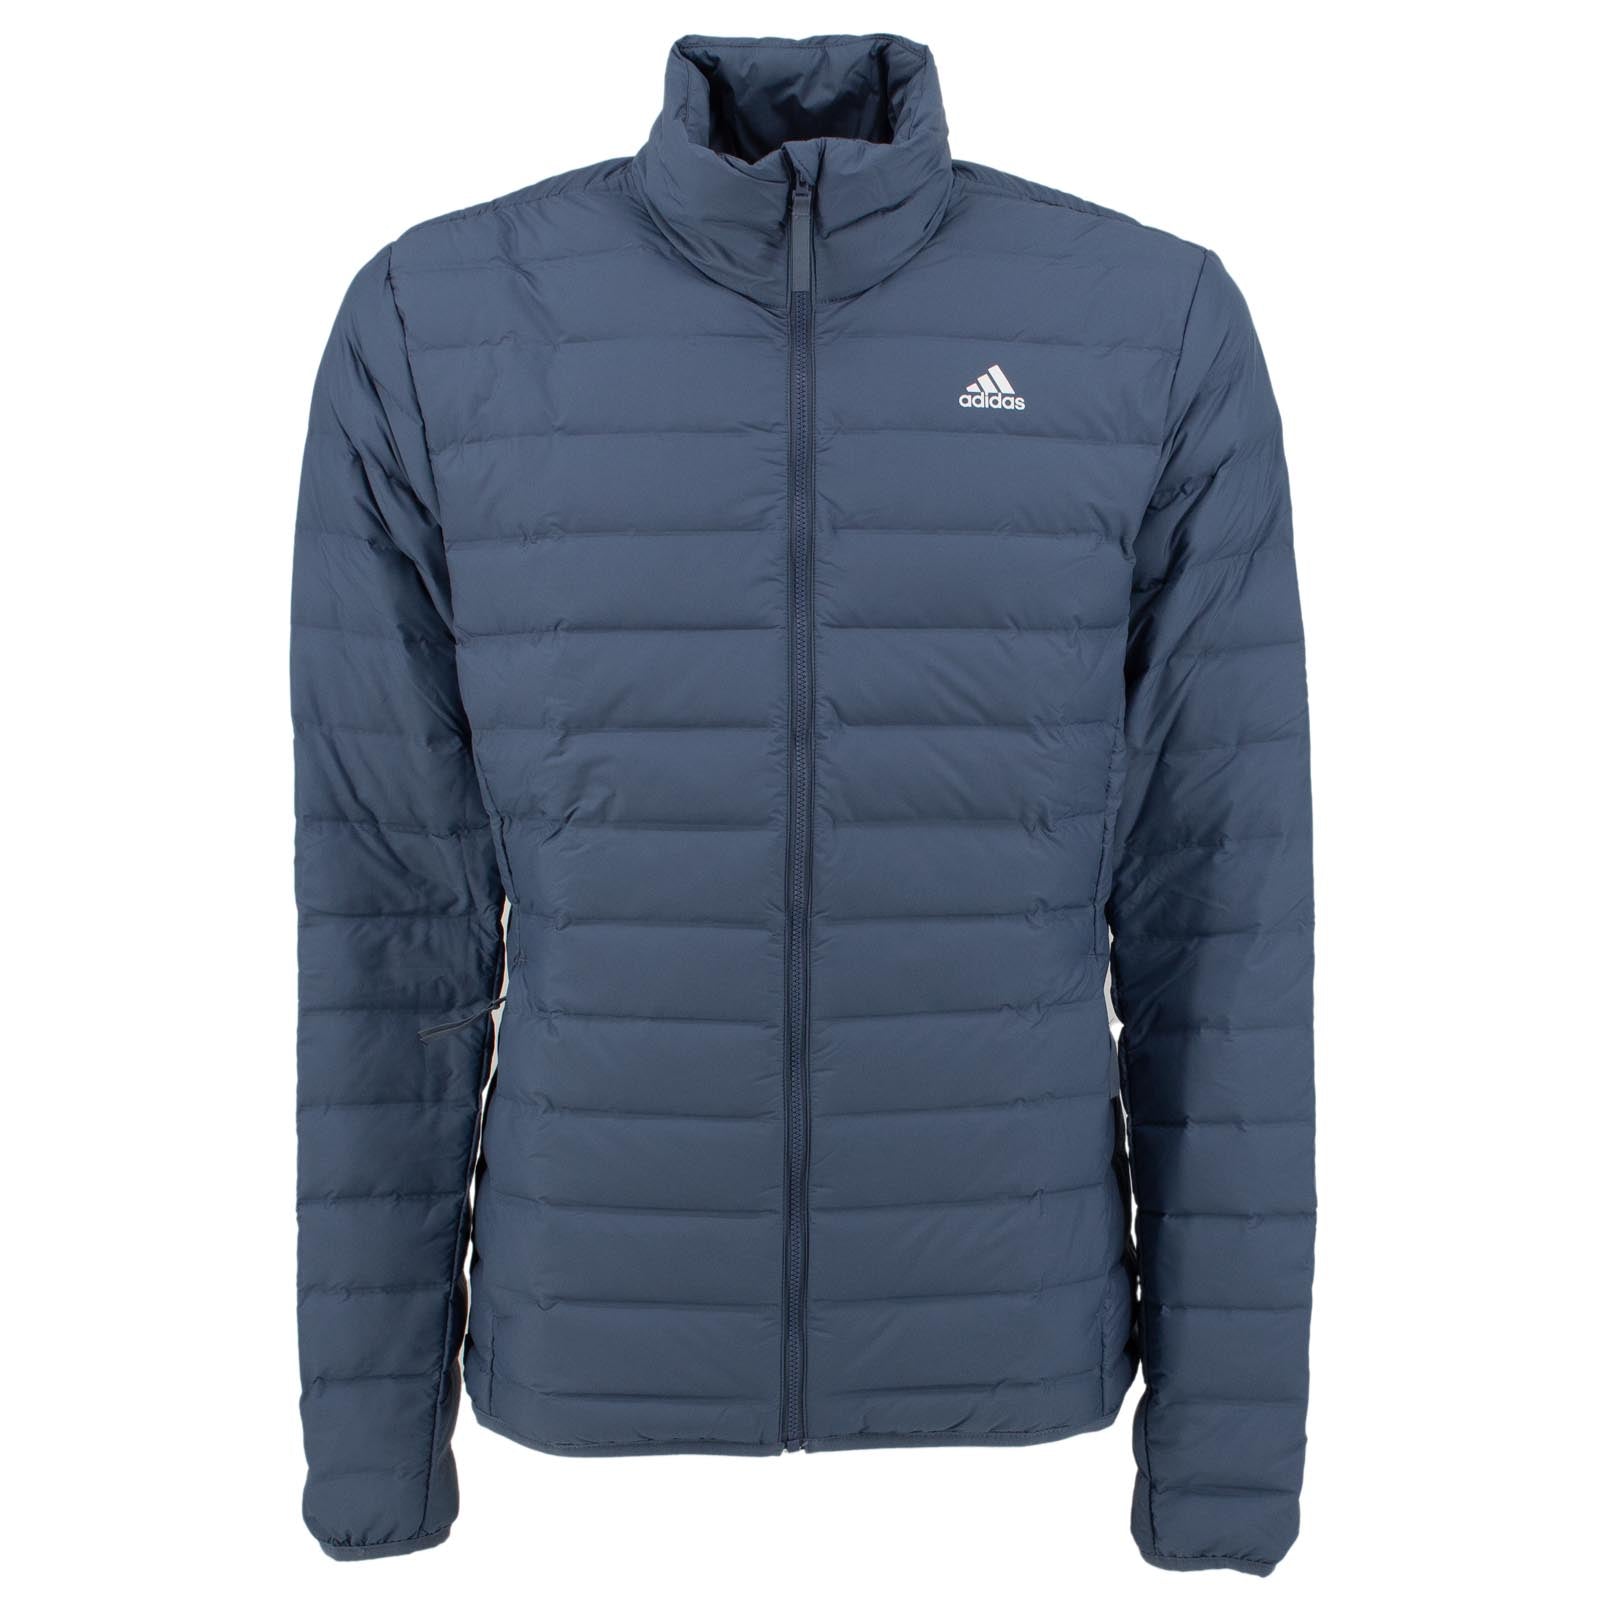 Adidas Outdoor Varilite Soft Jacket Herren Daunenjacke Winterjacke Blau DZ1422 S